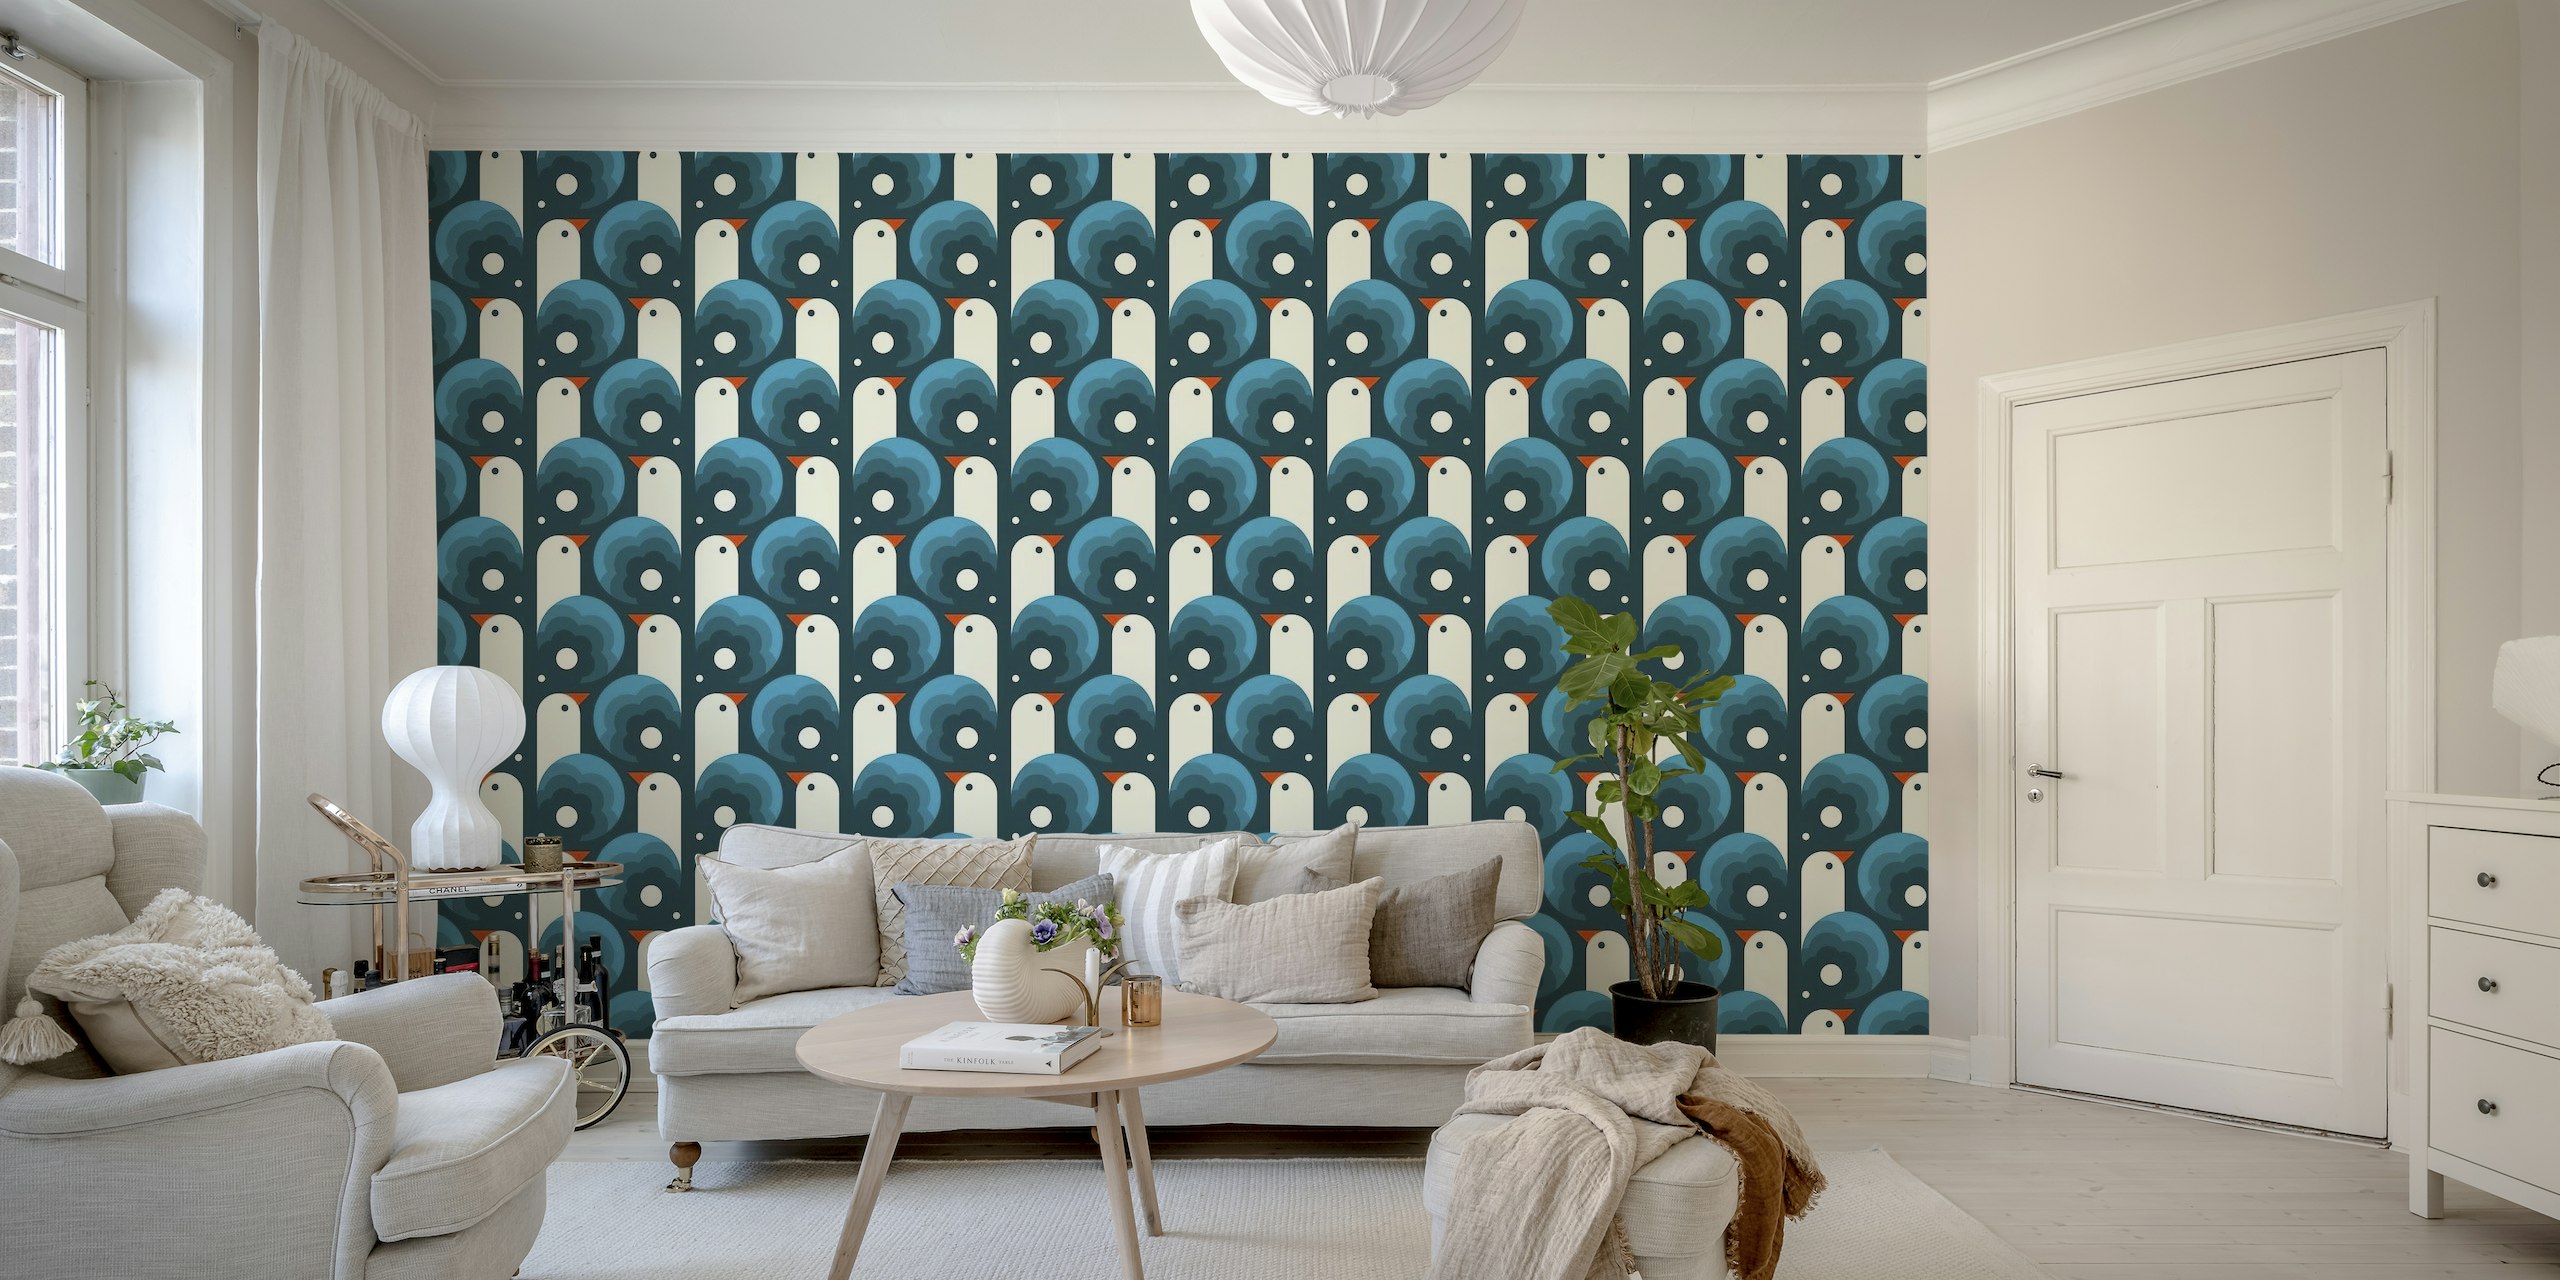 Mural de parede azul abstrato com pássaros brincalhões estilizados e padrões ornamentais